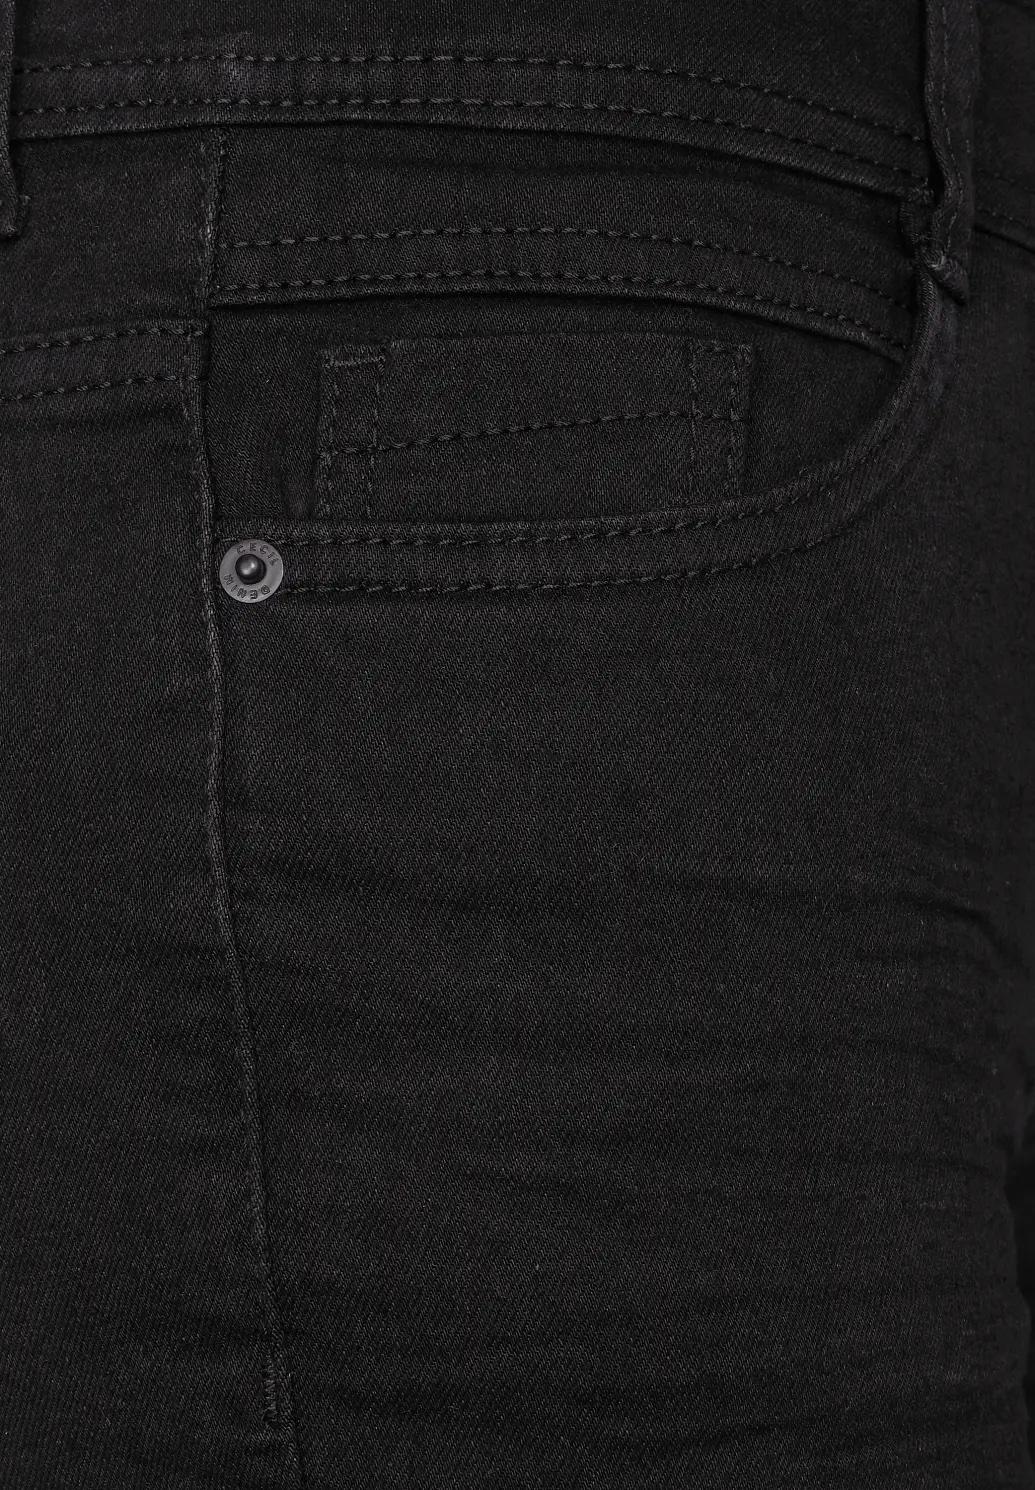 CECIL tmavé džínsy rovného strihu TORONTO, čie